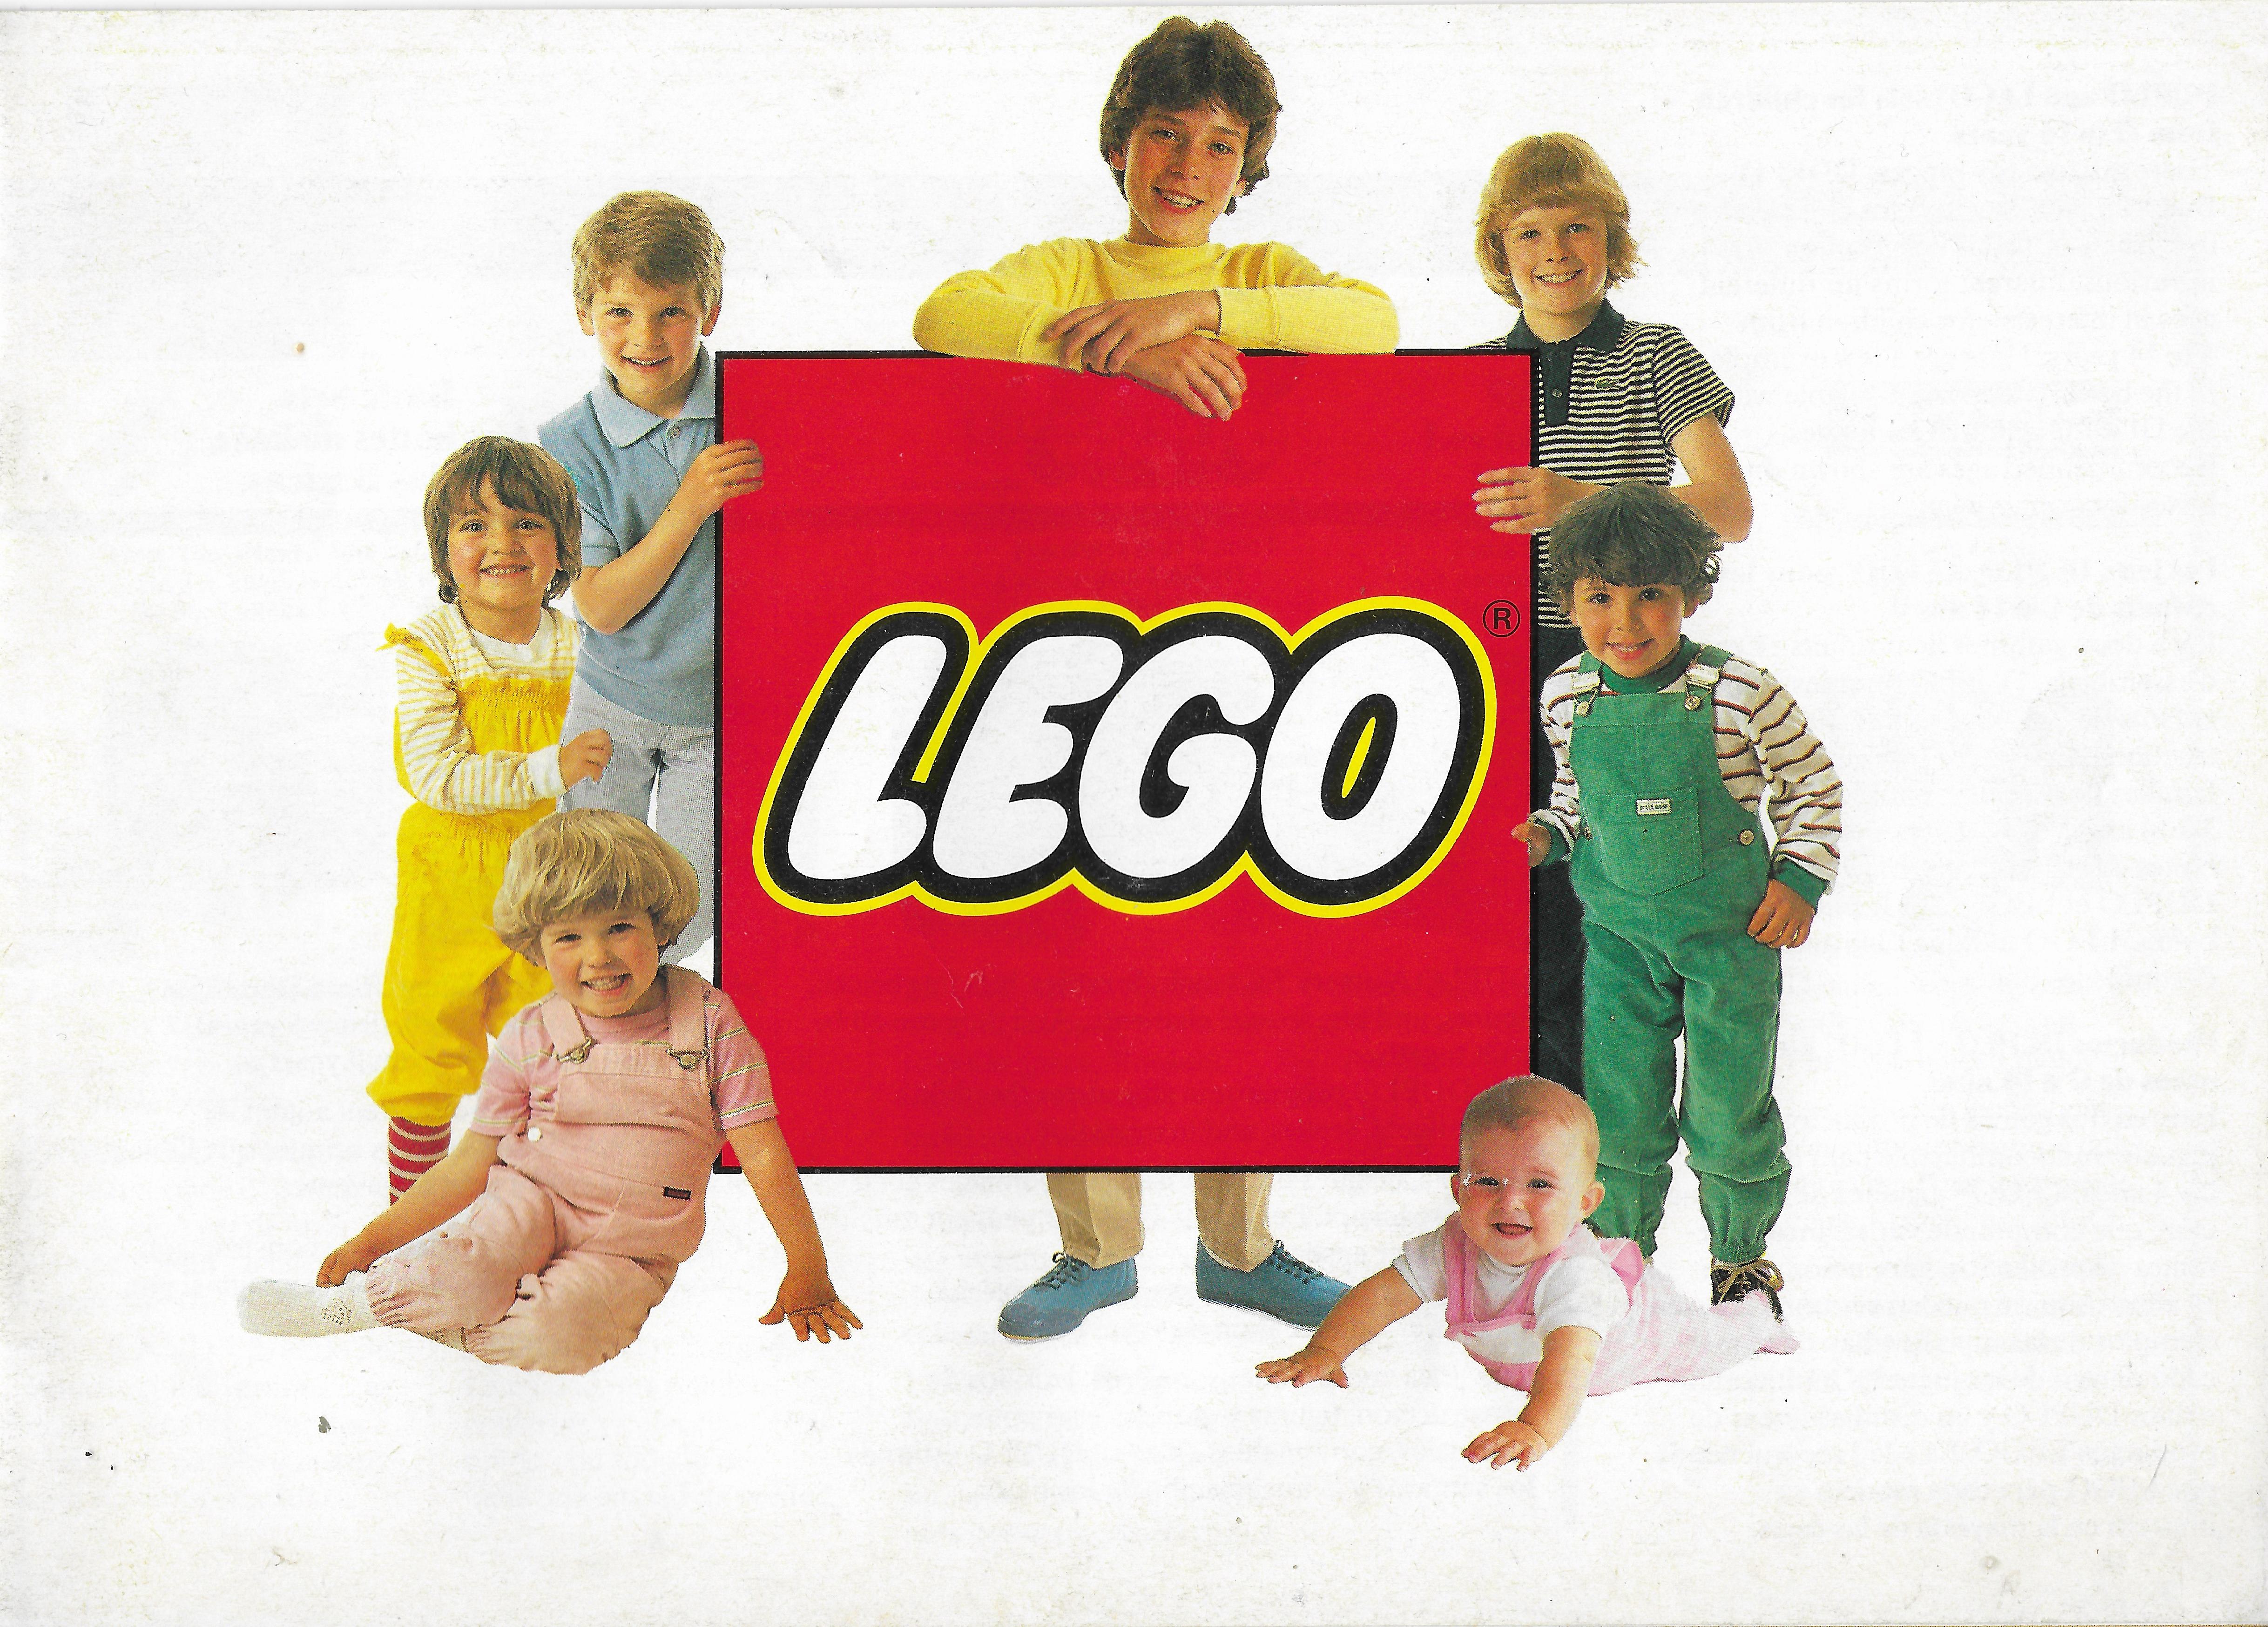 Nyugat-Európai Lego katalógus 1983-ból